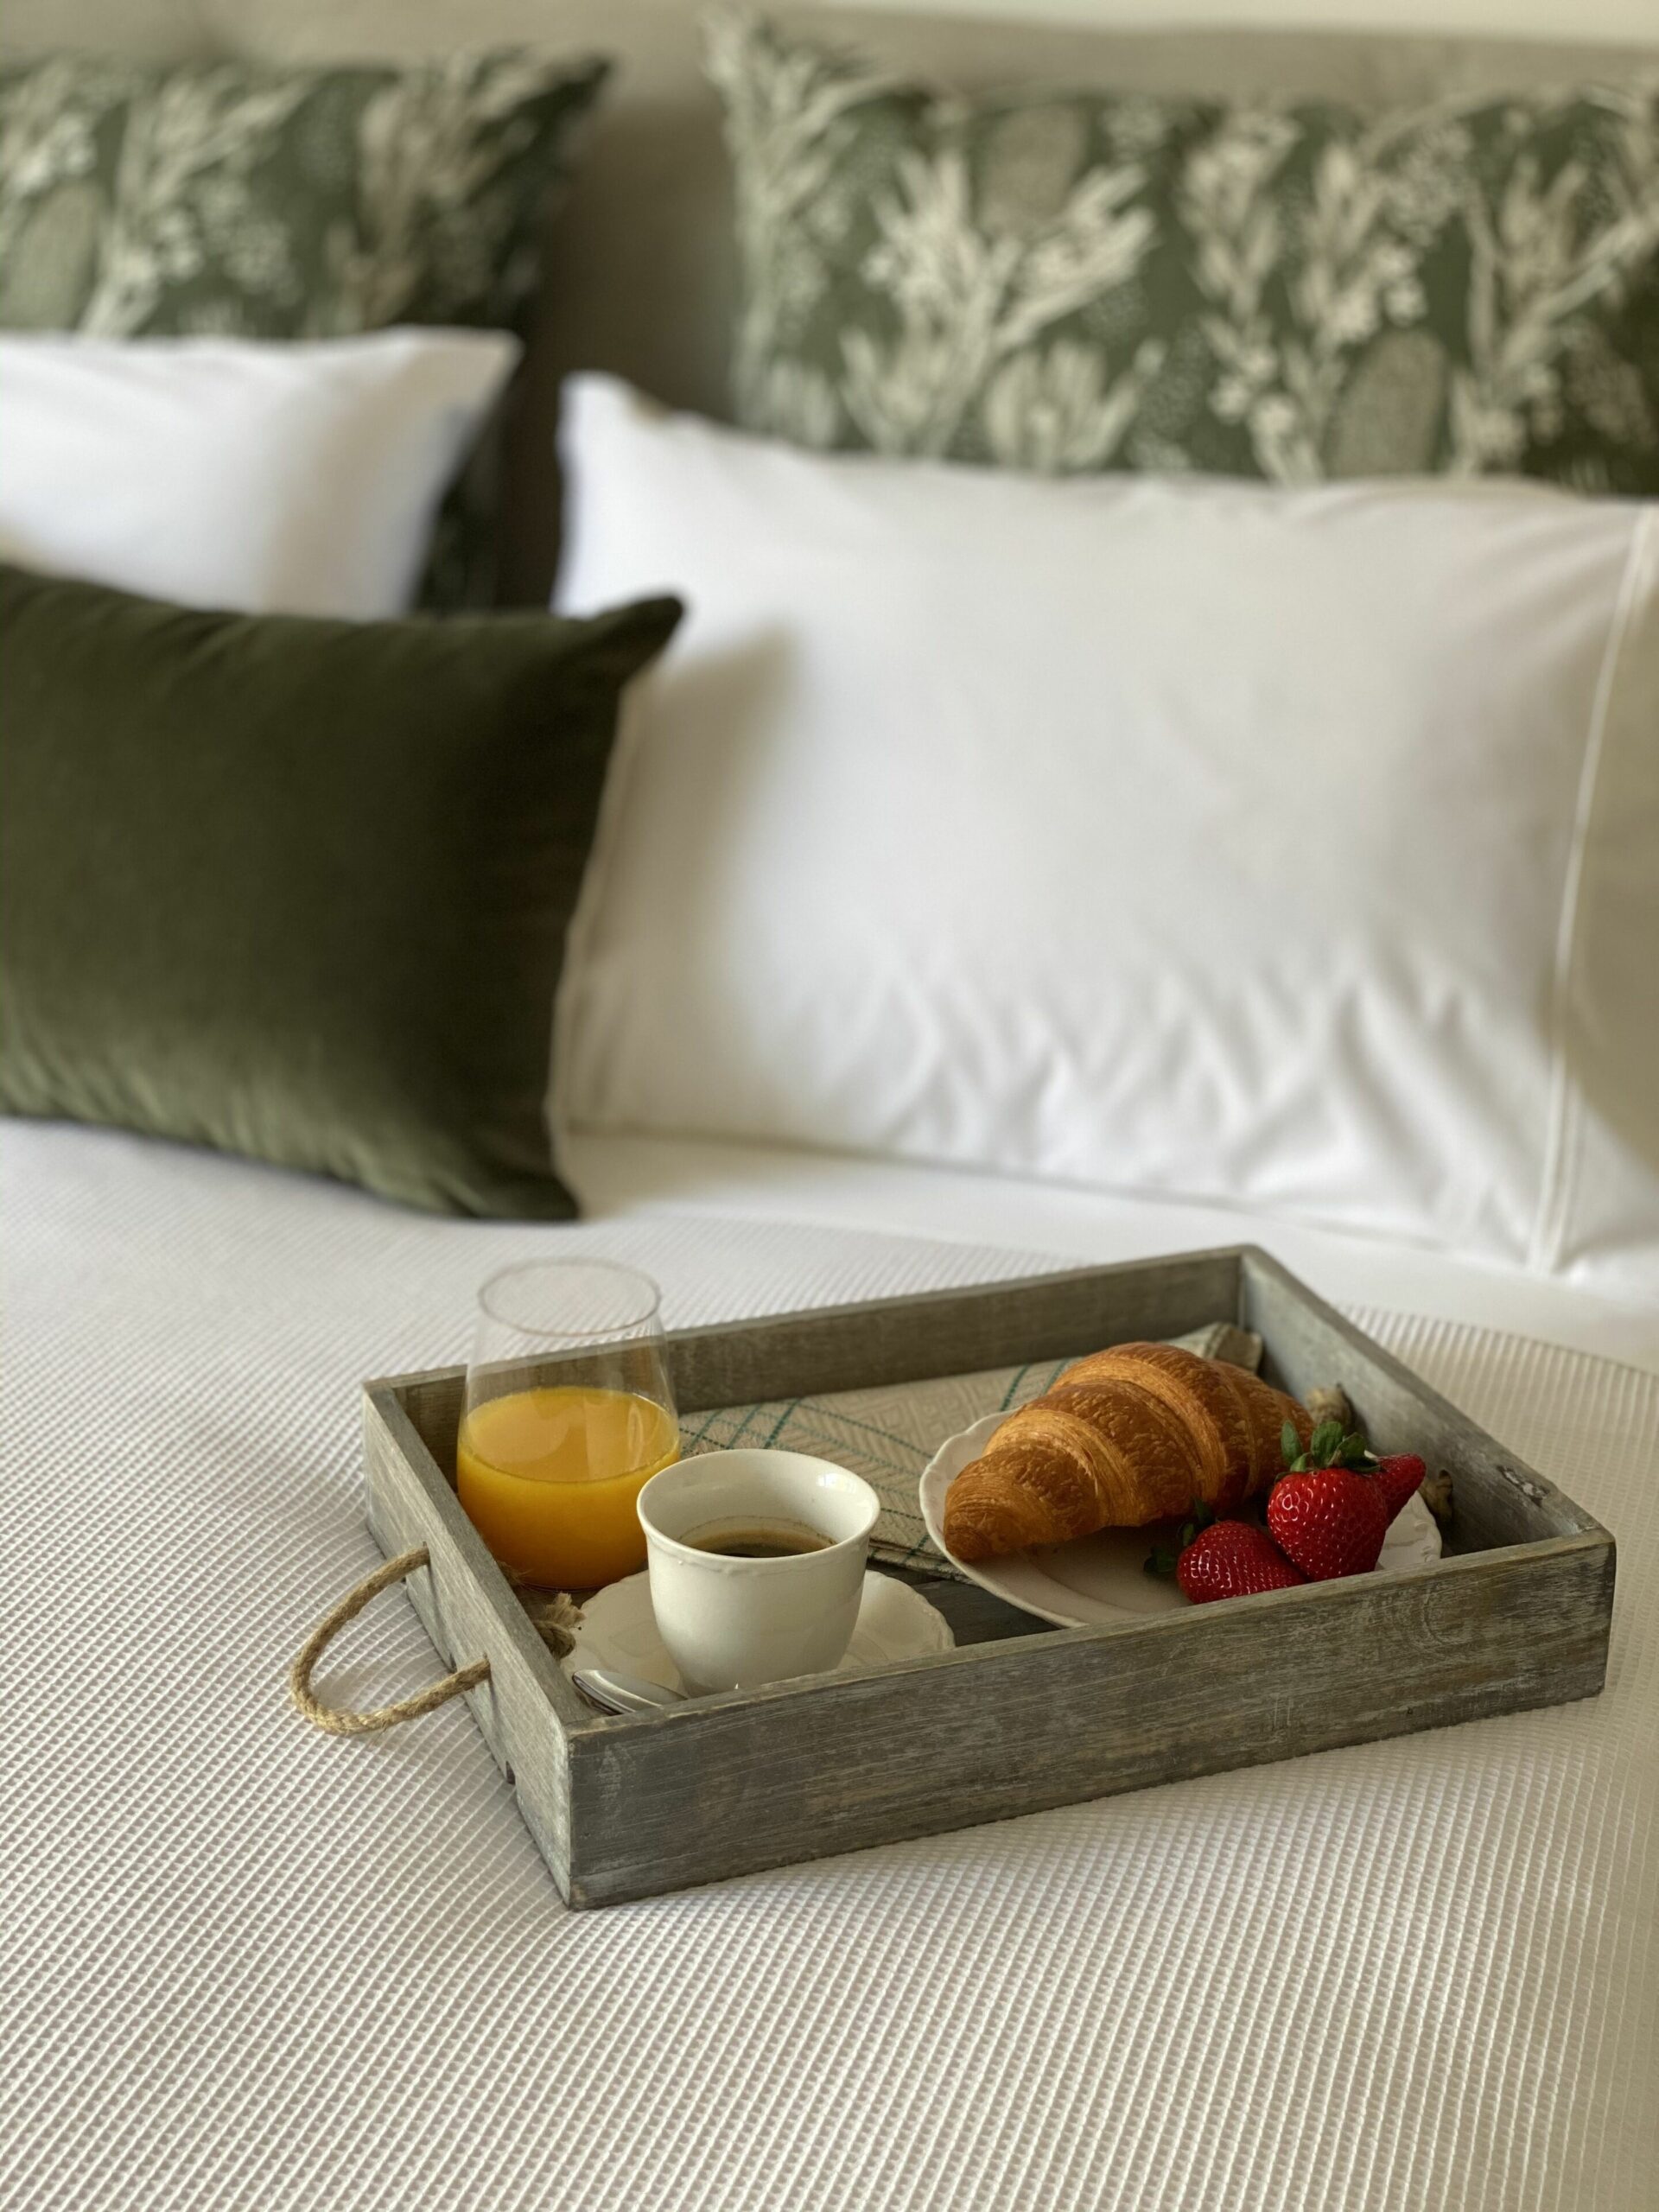 Le Cherche-midi Fremantle Bed & Breakfast